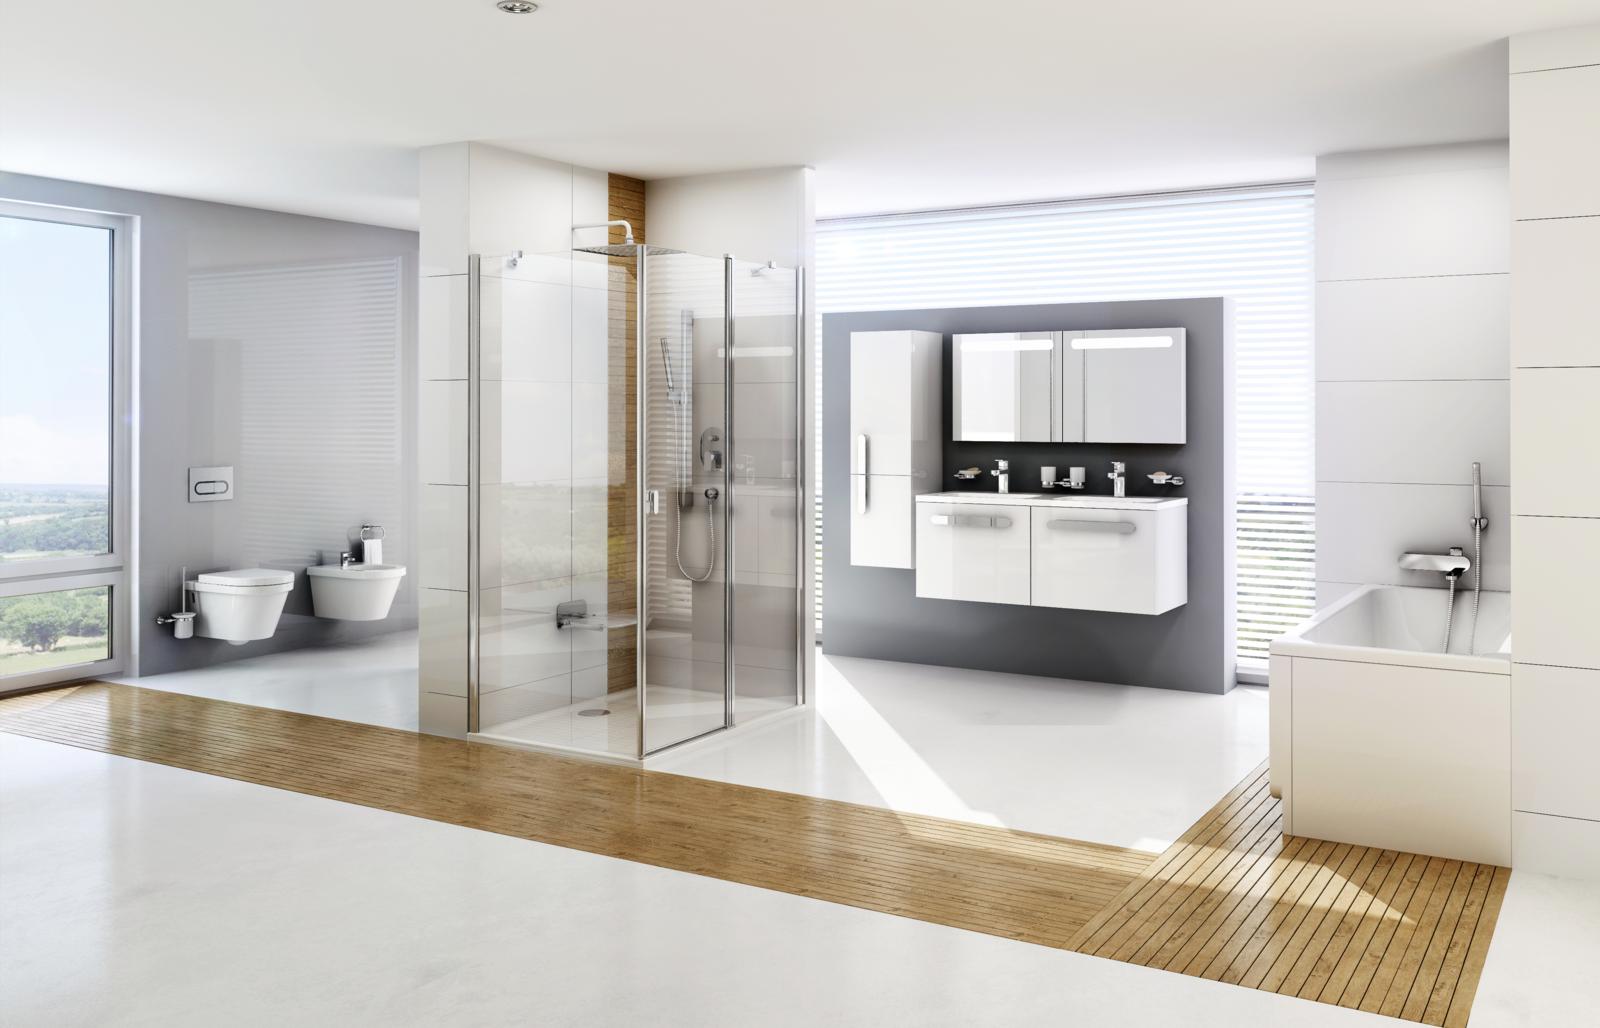 Egy teljeskörű fürdőszoba-koncepcióval gondoskodhatsz a fürdőd egységes arculatáról.